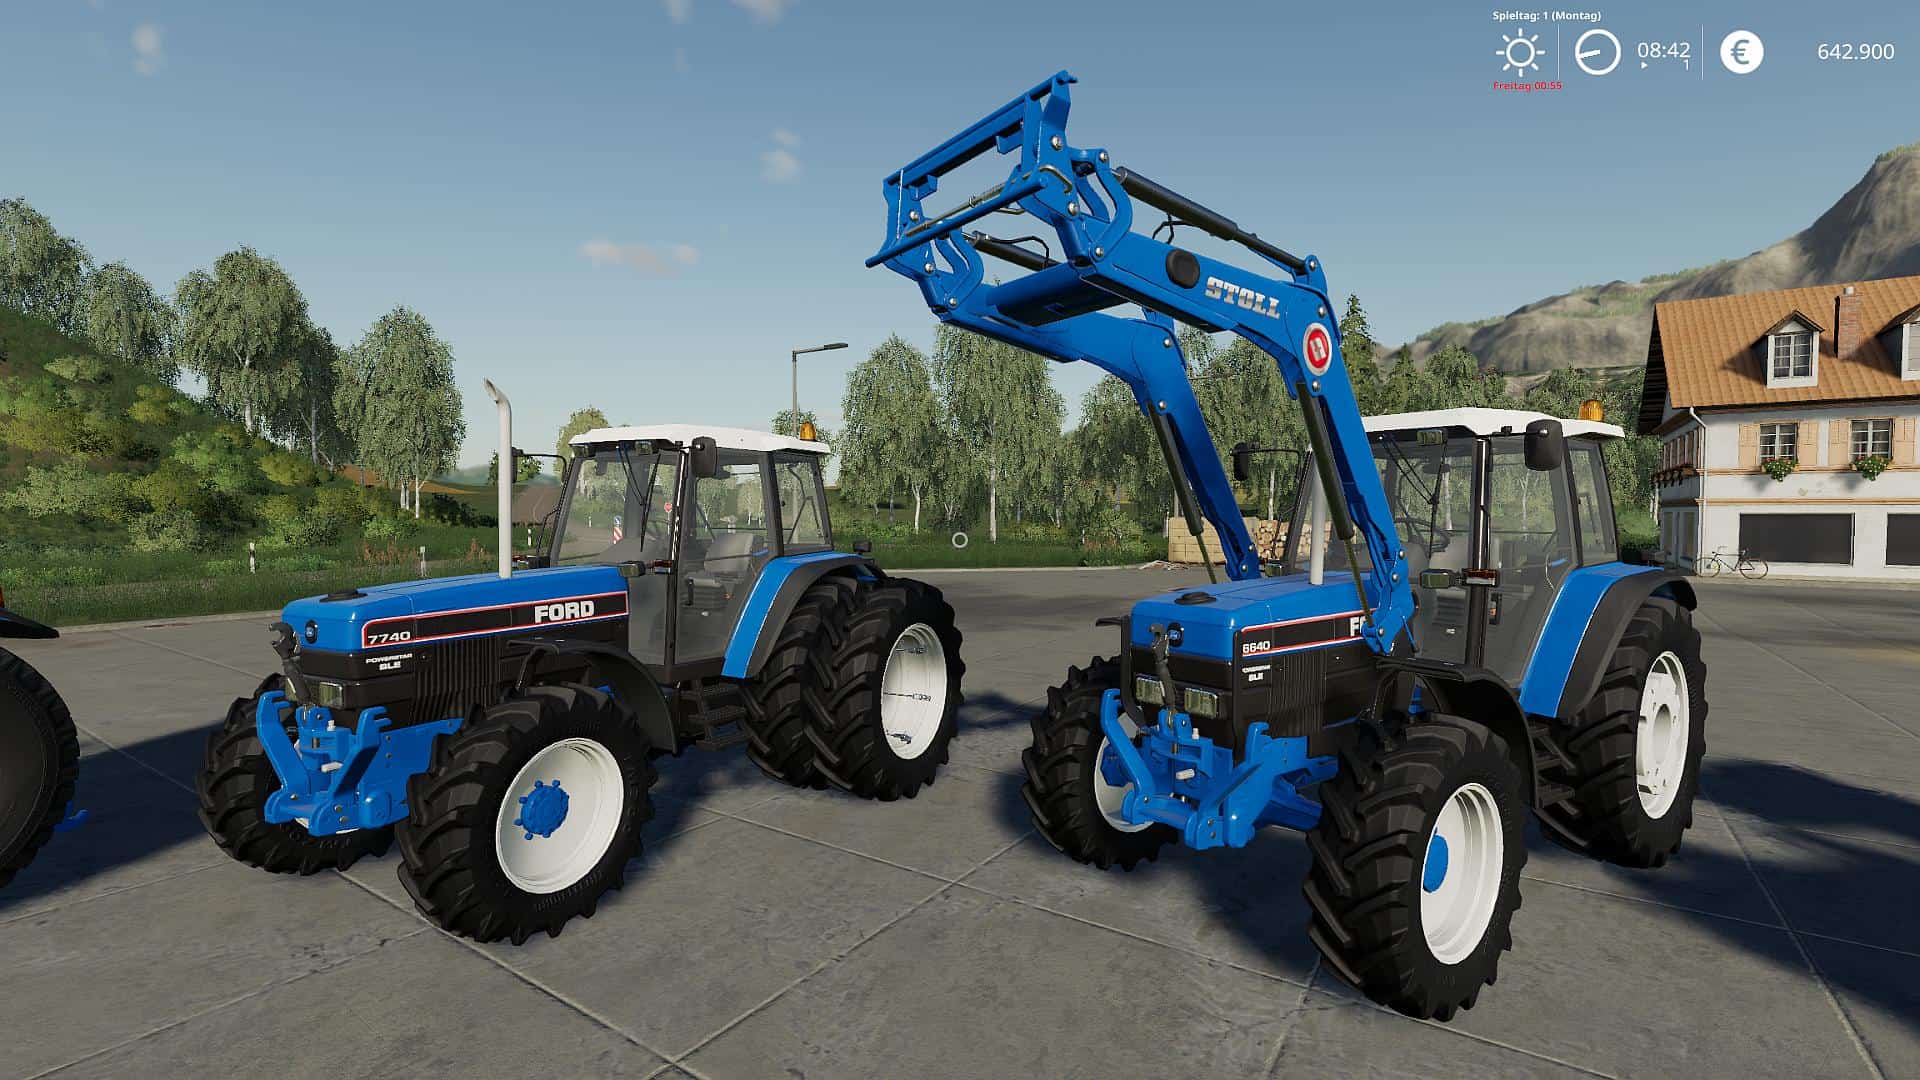 FS19 Ford 40er Serie v1.0.0.0 - FS 19 Tractors Mod Download.